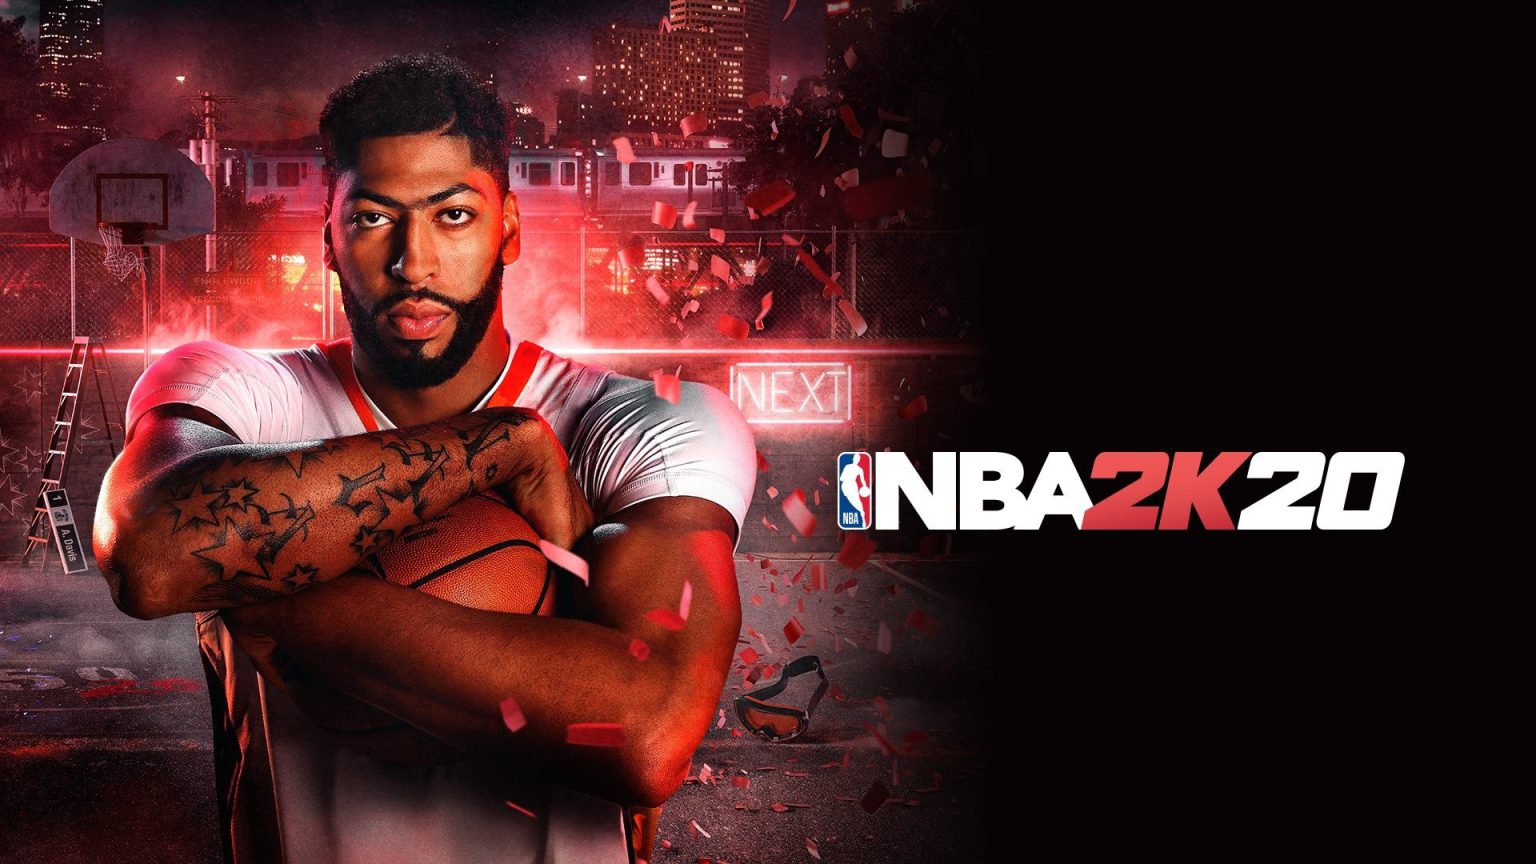 2K Games anuncia el cierre oficial de los servidores de NBA 2K20 a finales de año. Cualquier función online será invalidada.